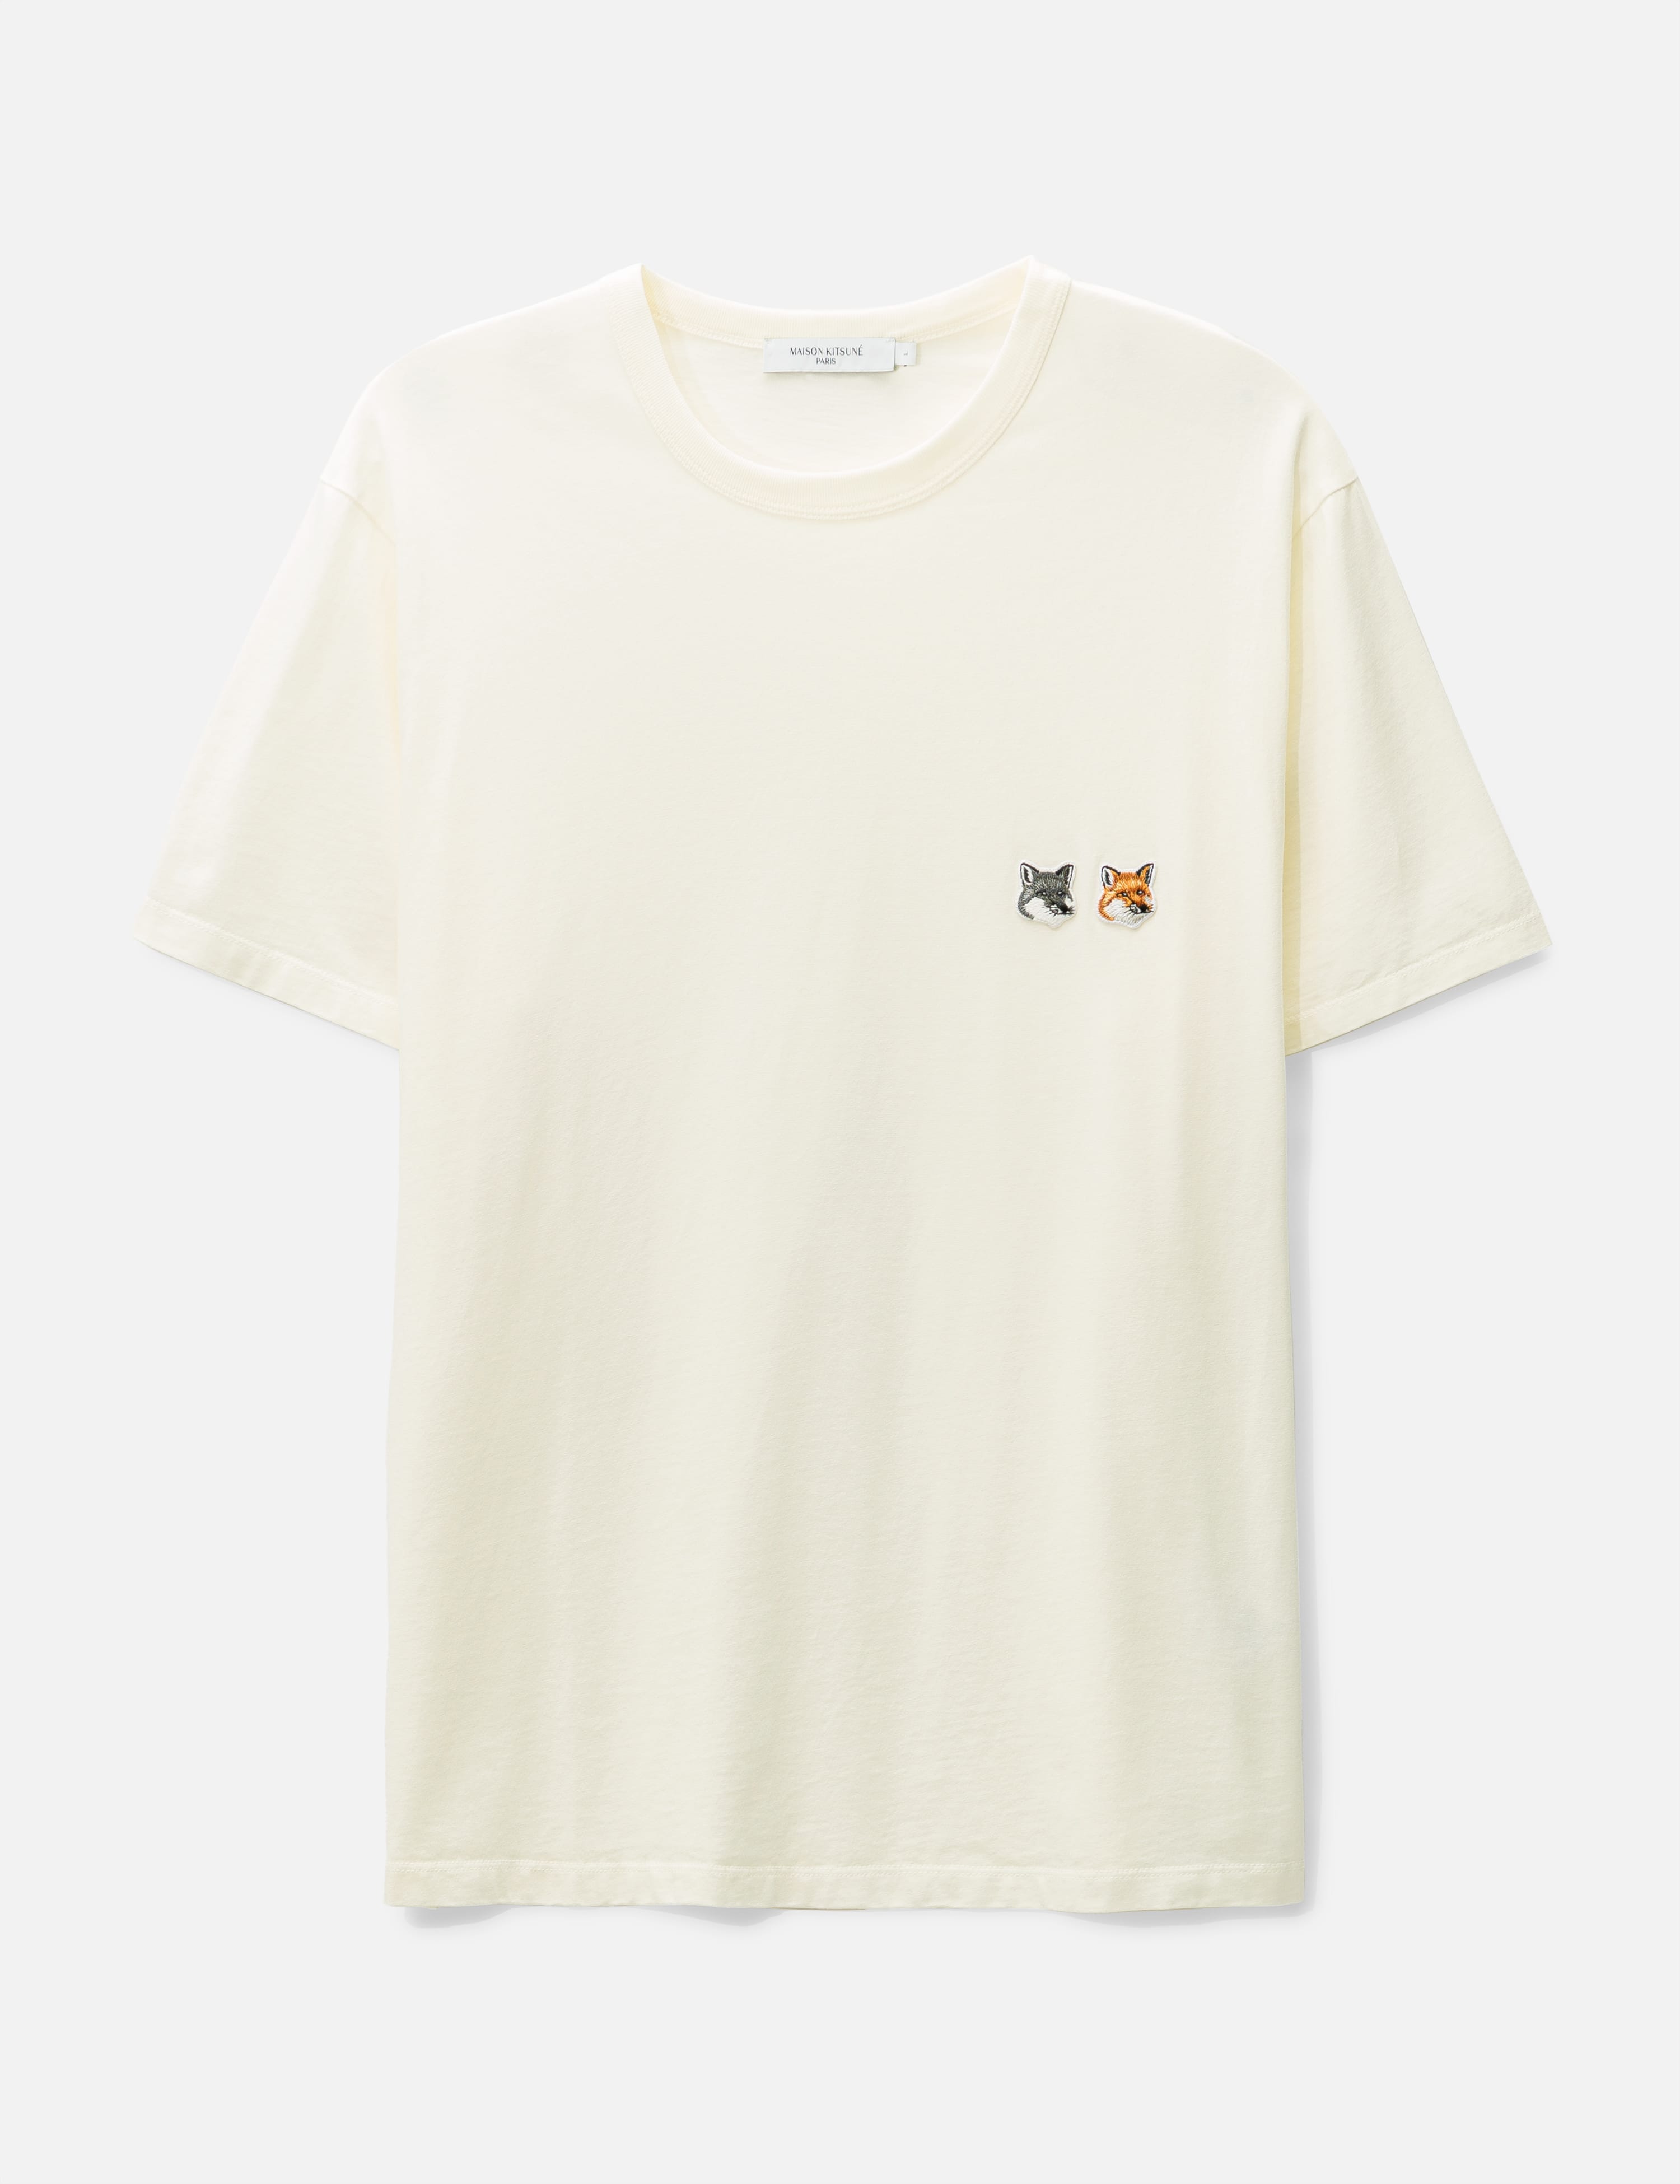 Maison Kitsuné - ダブル フォックスヘッド パッチ クラシック Tシャツ ...